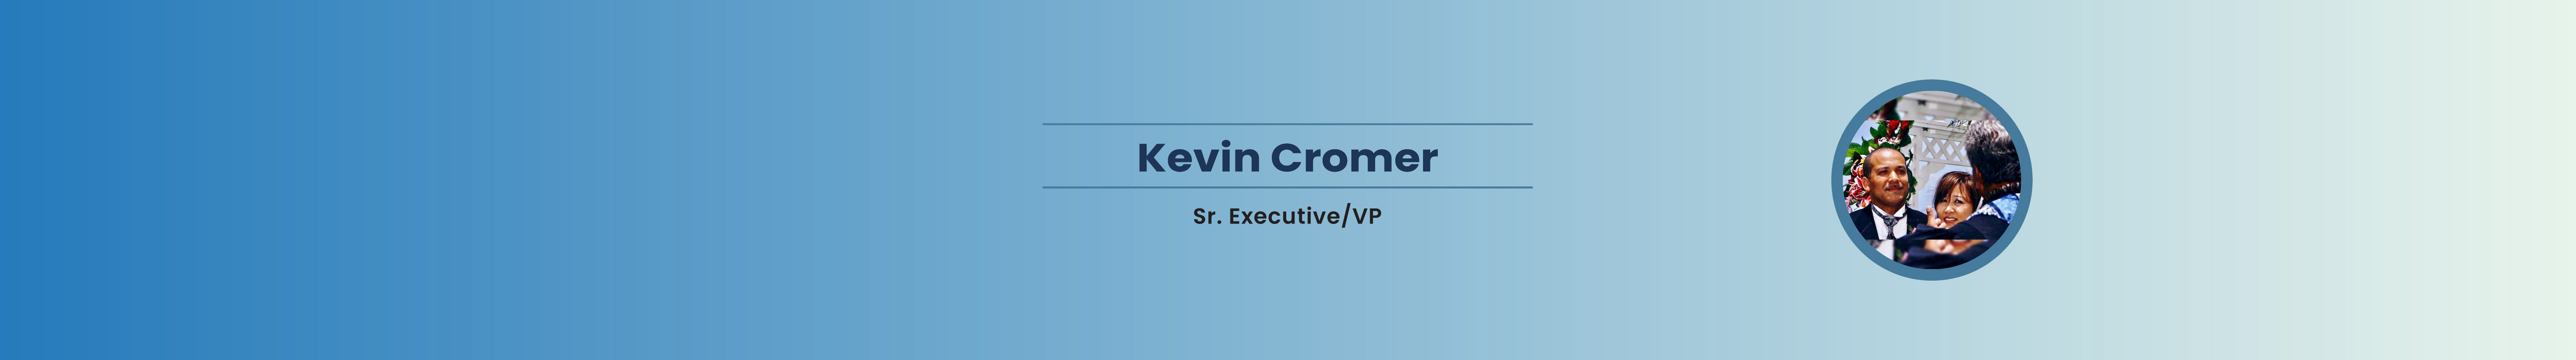 Kevin Cromer's profile banner